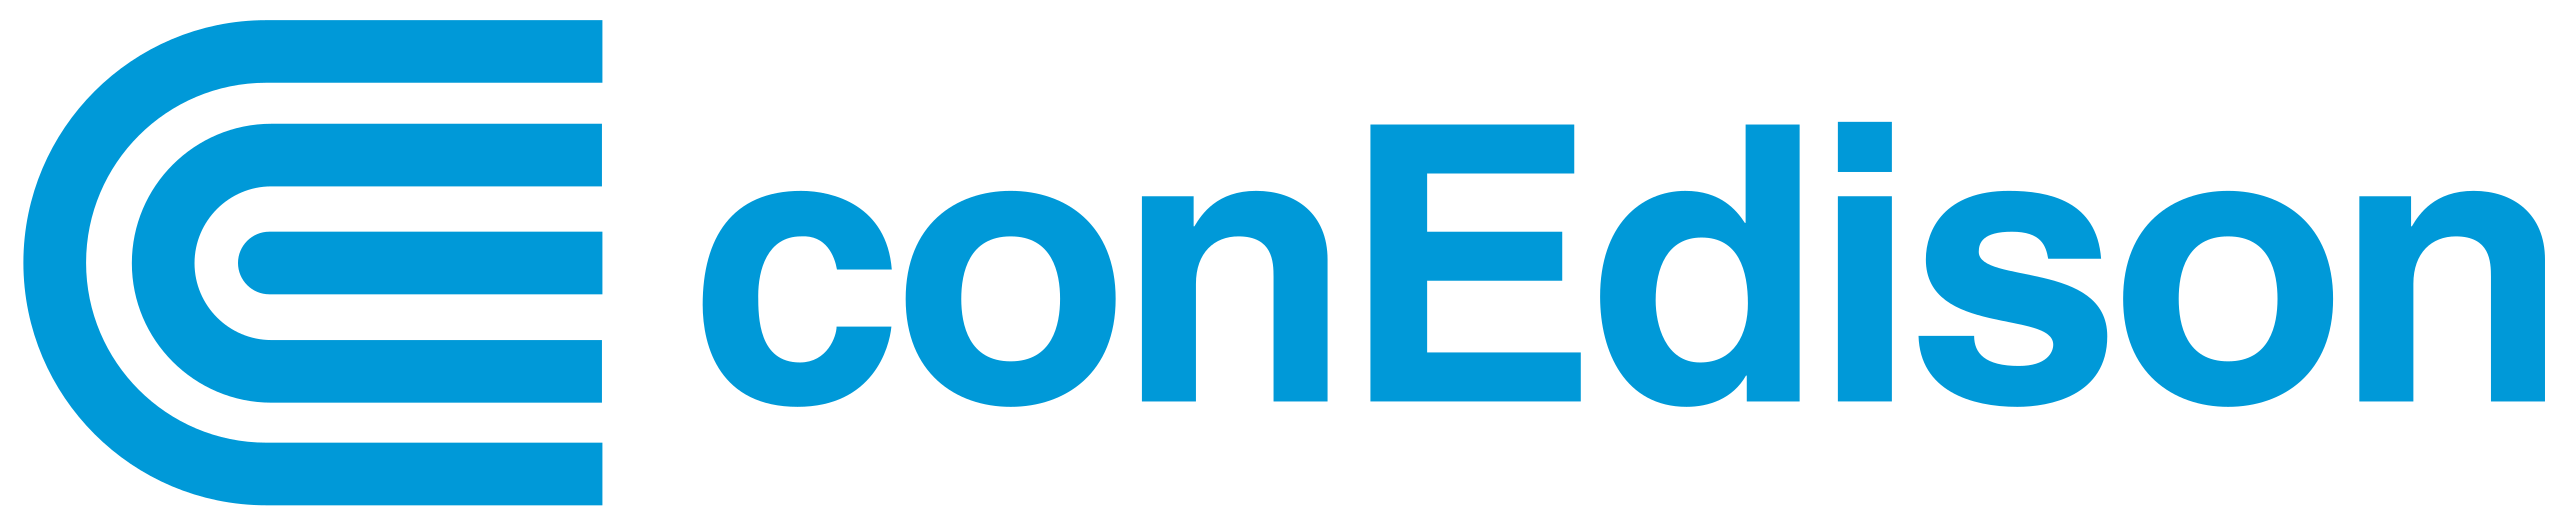 File:ConEd logo.svg - Wikipedia